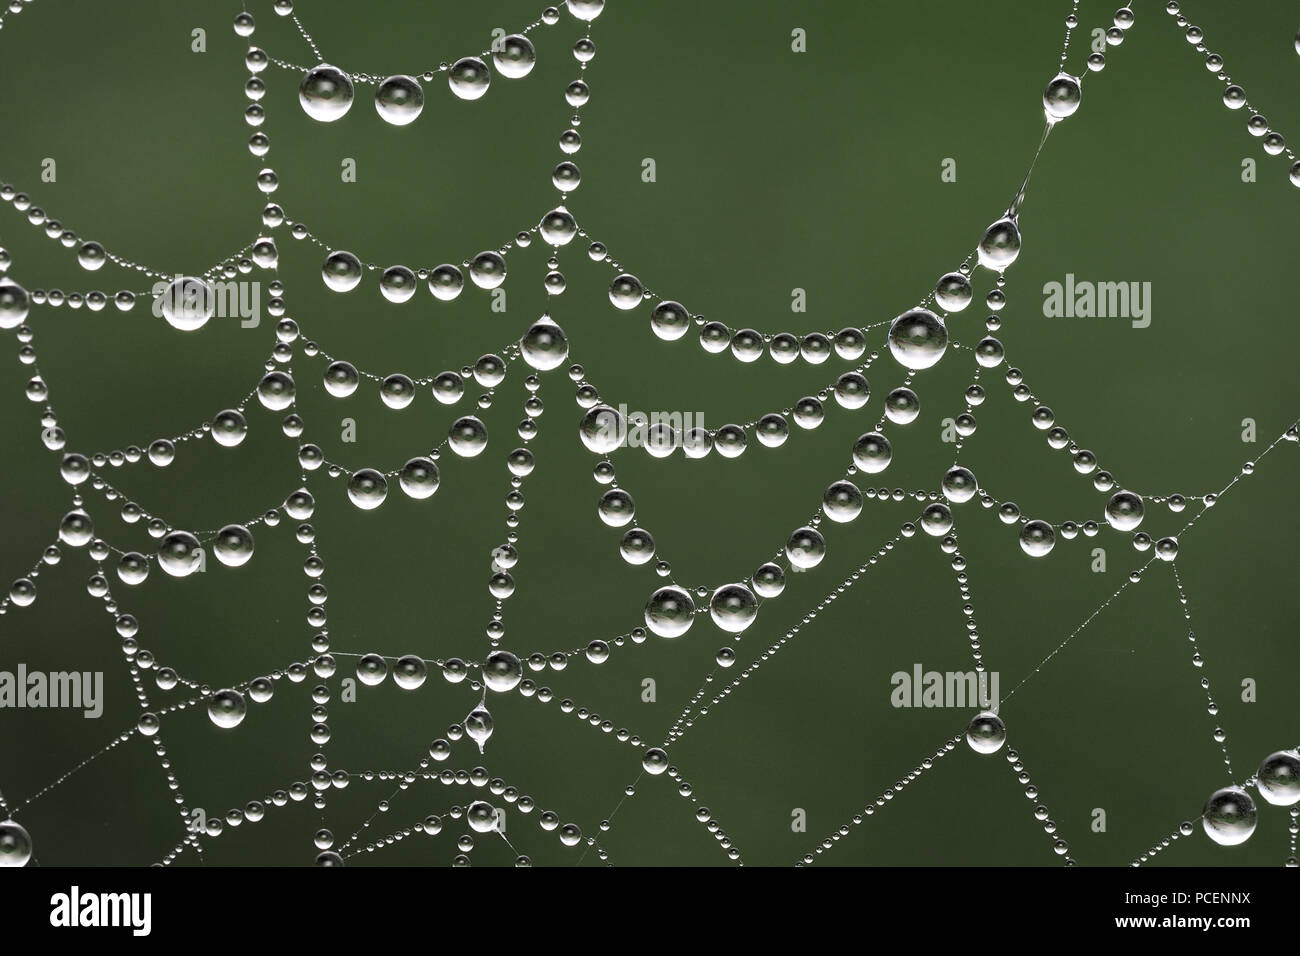 Web Spiders couvert de gouttes de rosée. Tipperary, Irlande Banque D'Images